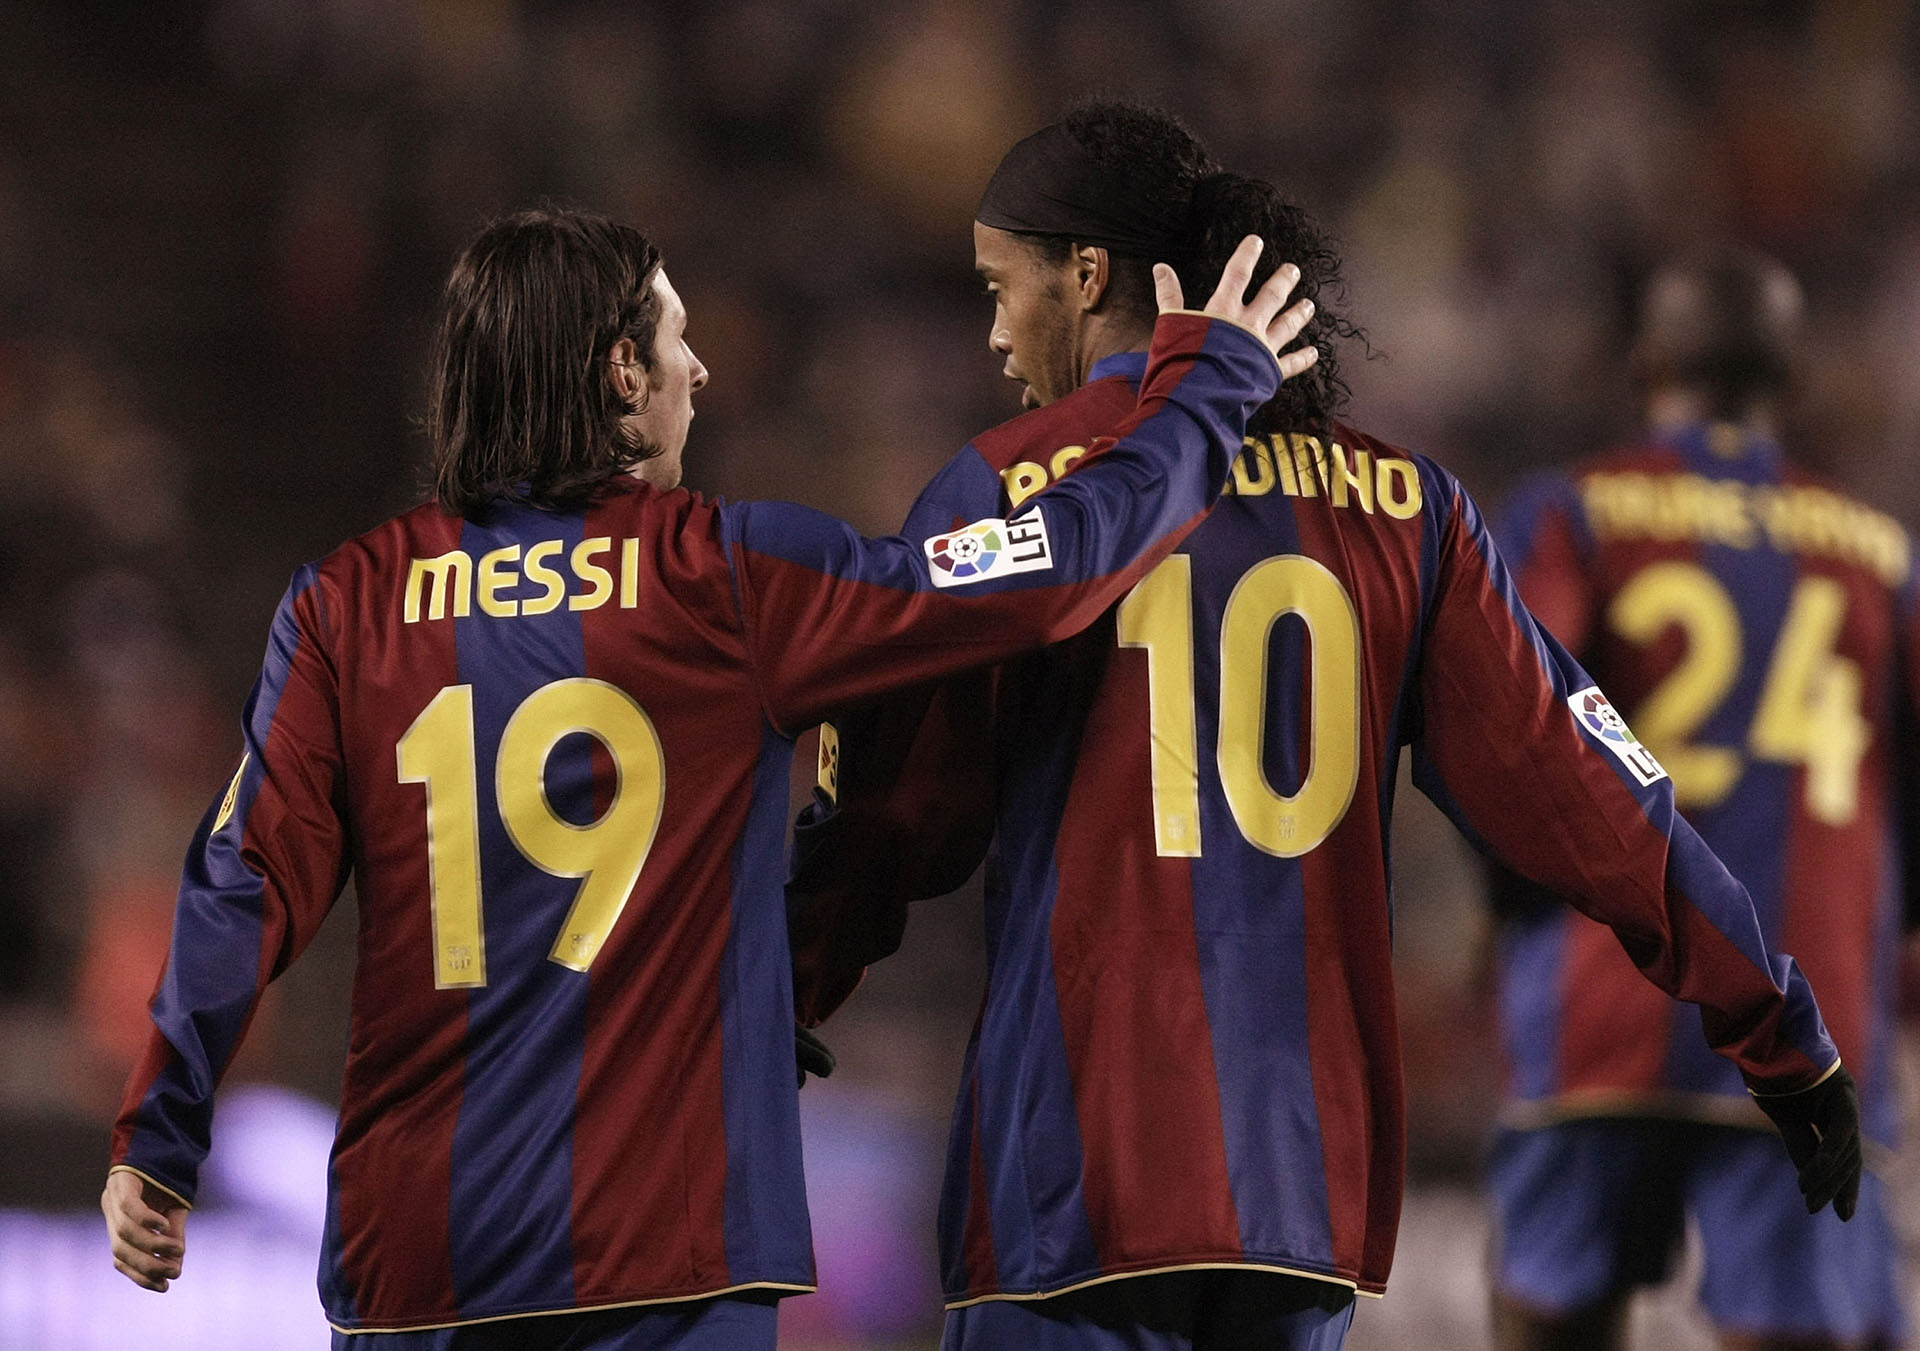 ¿Qué número tenía Messi antes de las 10?